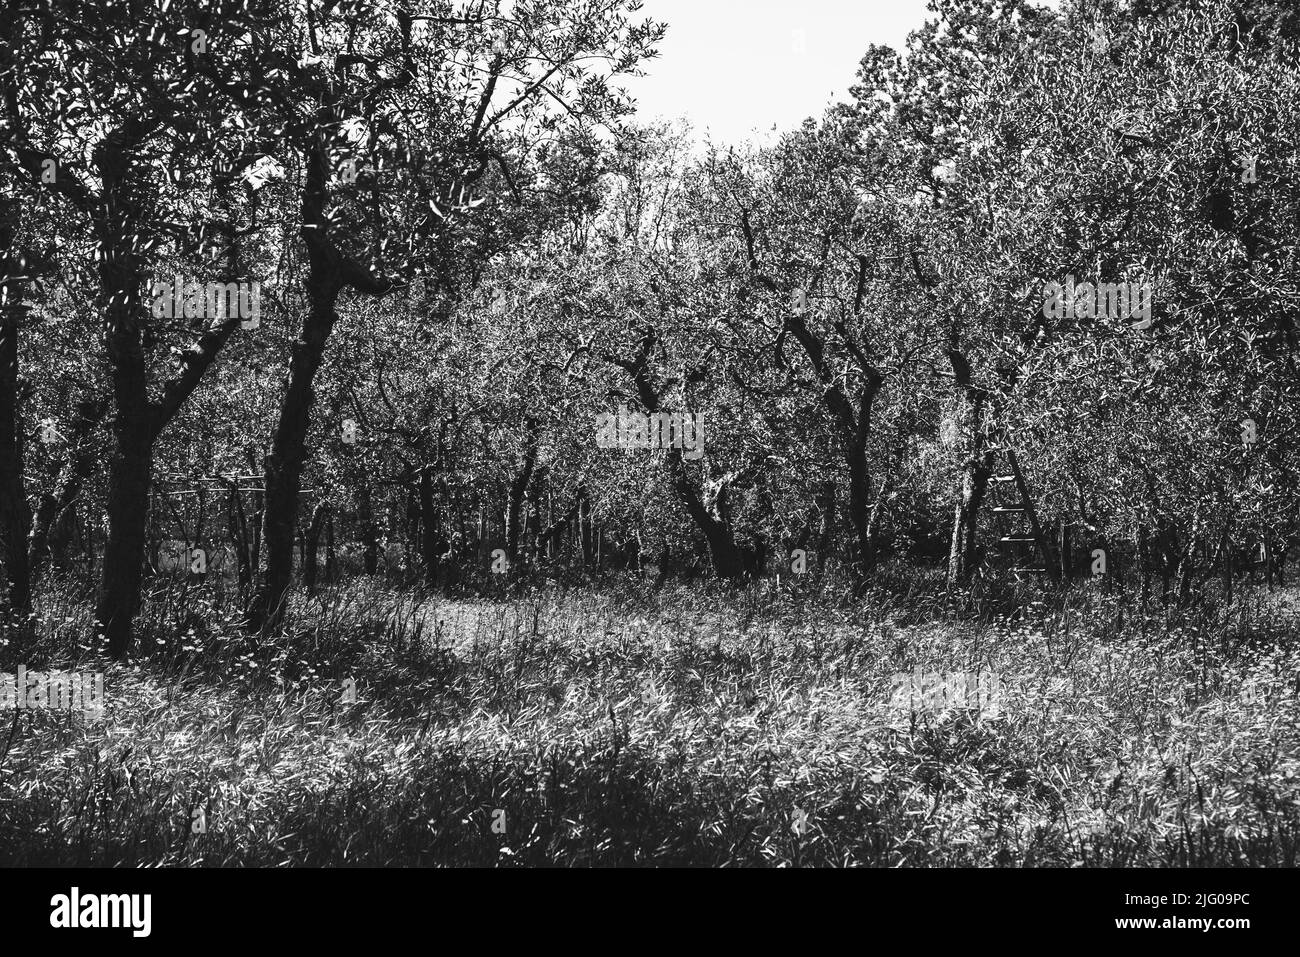 Oliveti frutteto paesaggio. Scala appoggiata su un albero. Toscana, Italia. Tempo di raccolta. Foto storica in bianco e nero Foto Stock